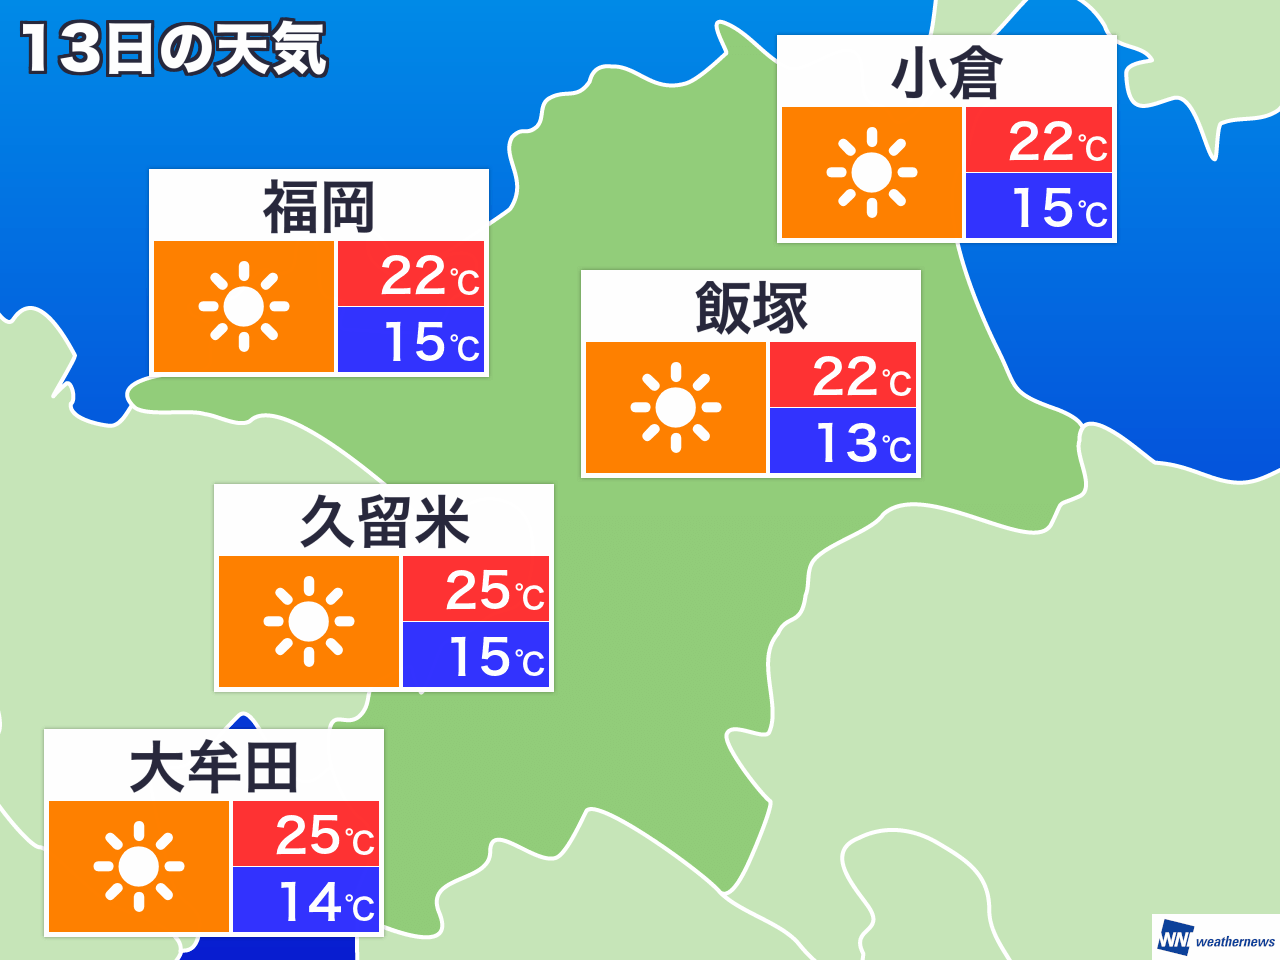 市東 福岡 区 予報 天気